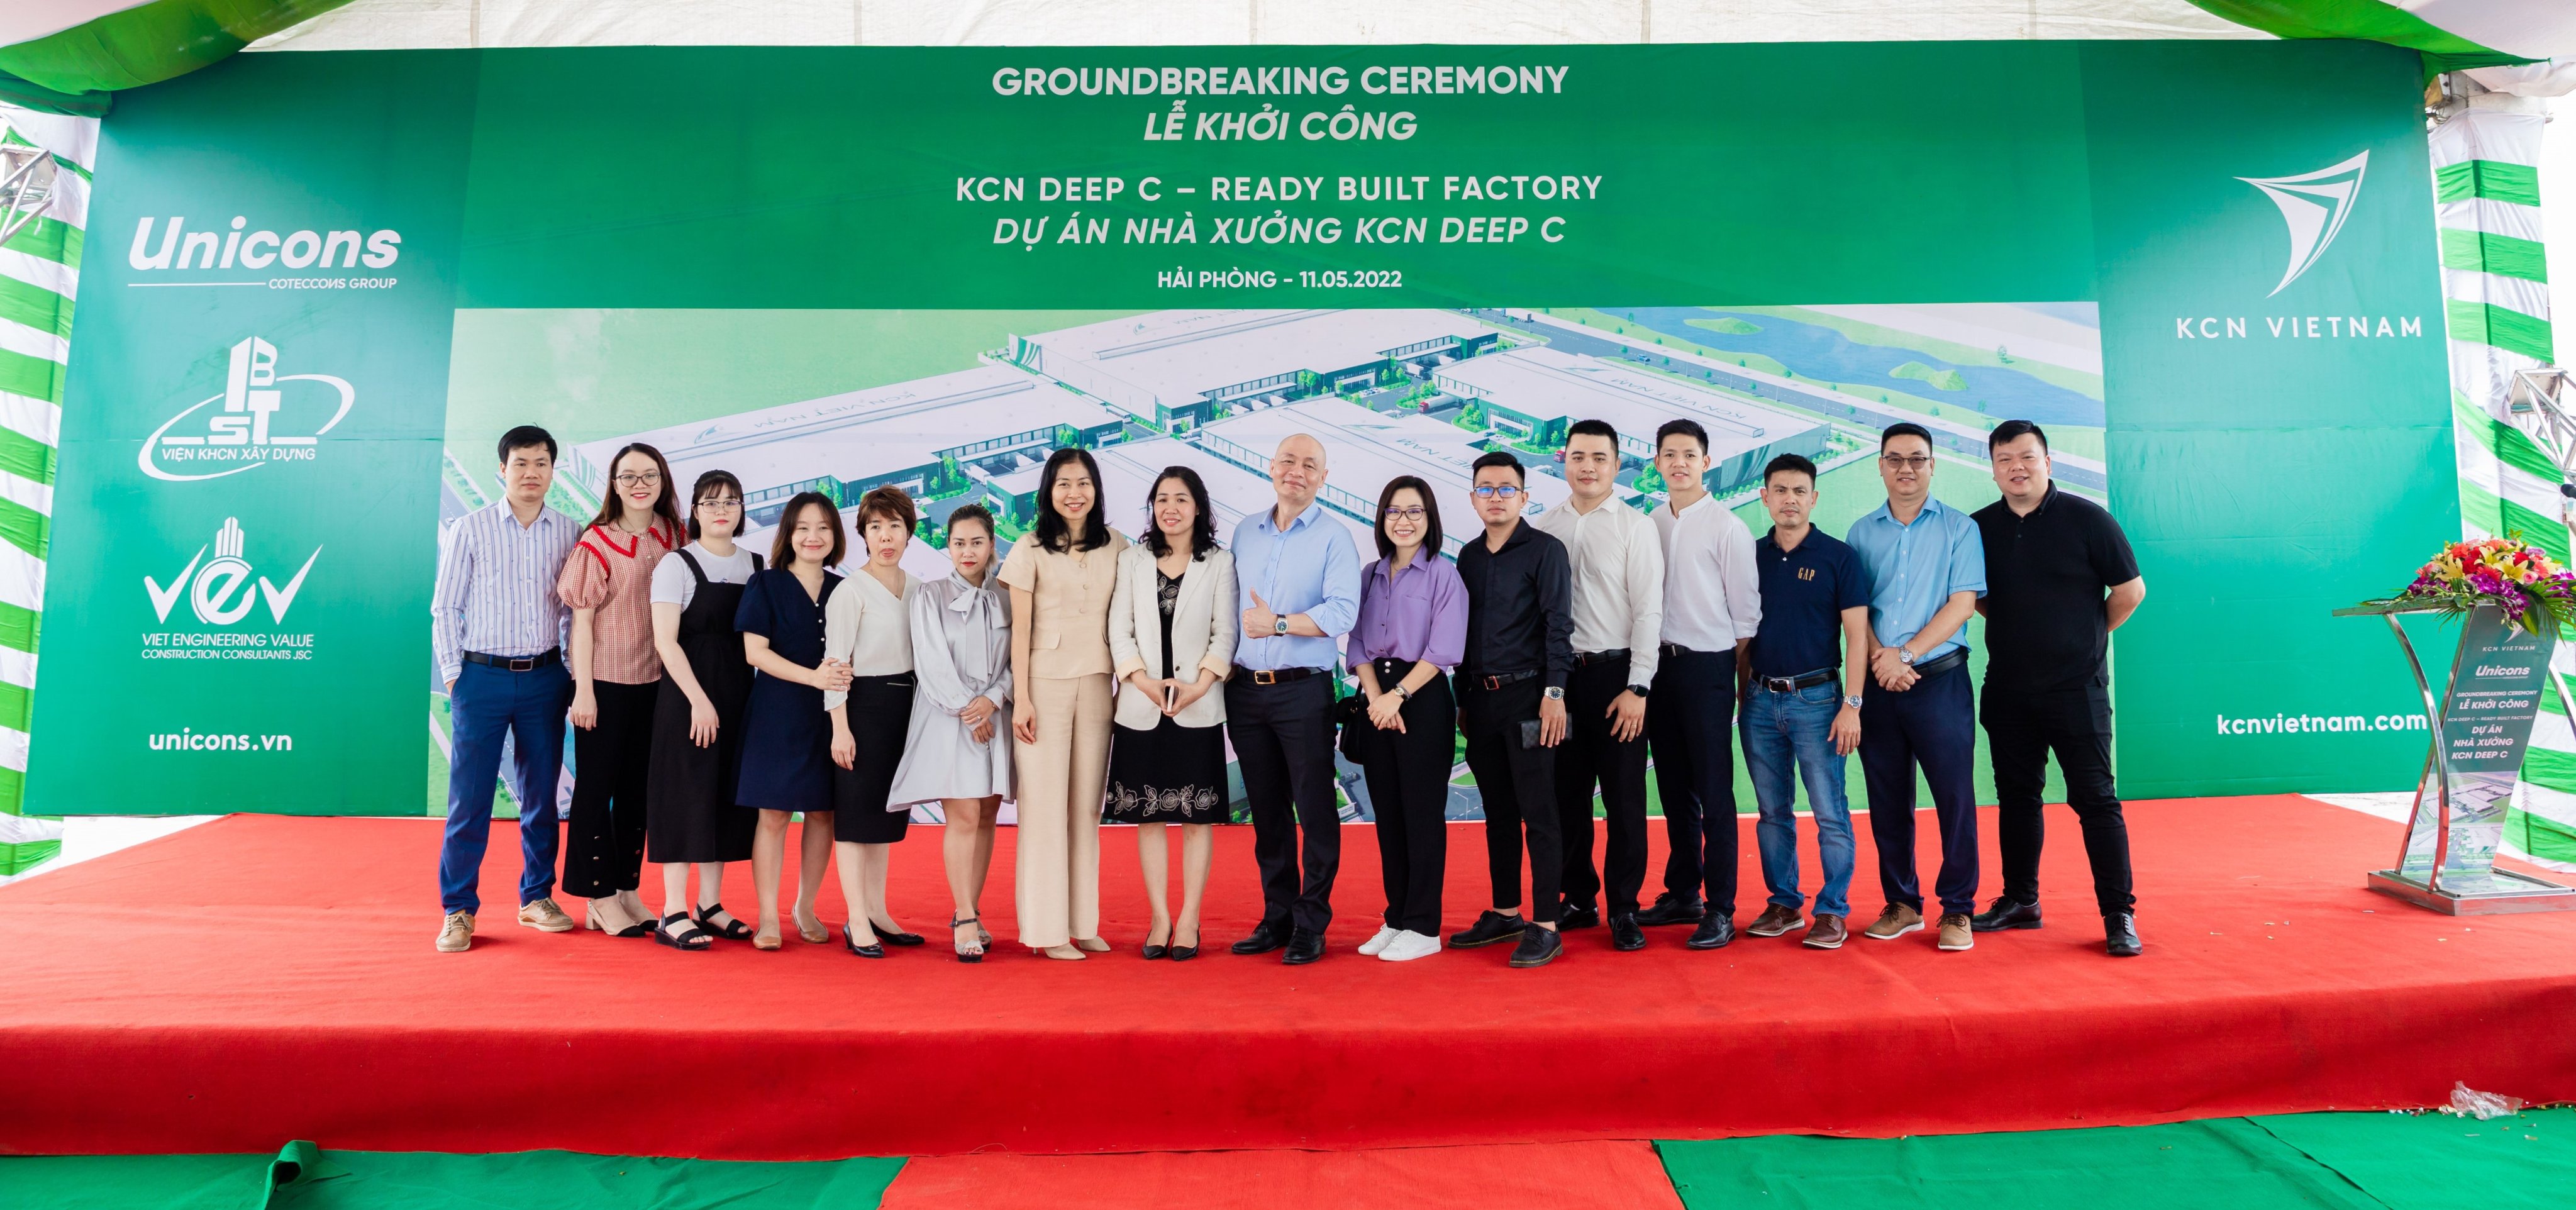 KCN Vietnam ground breaking DEEP C Industrial Zones 2